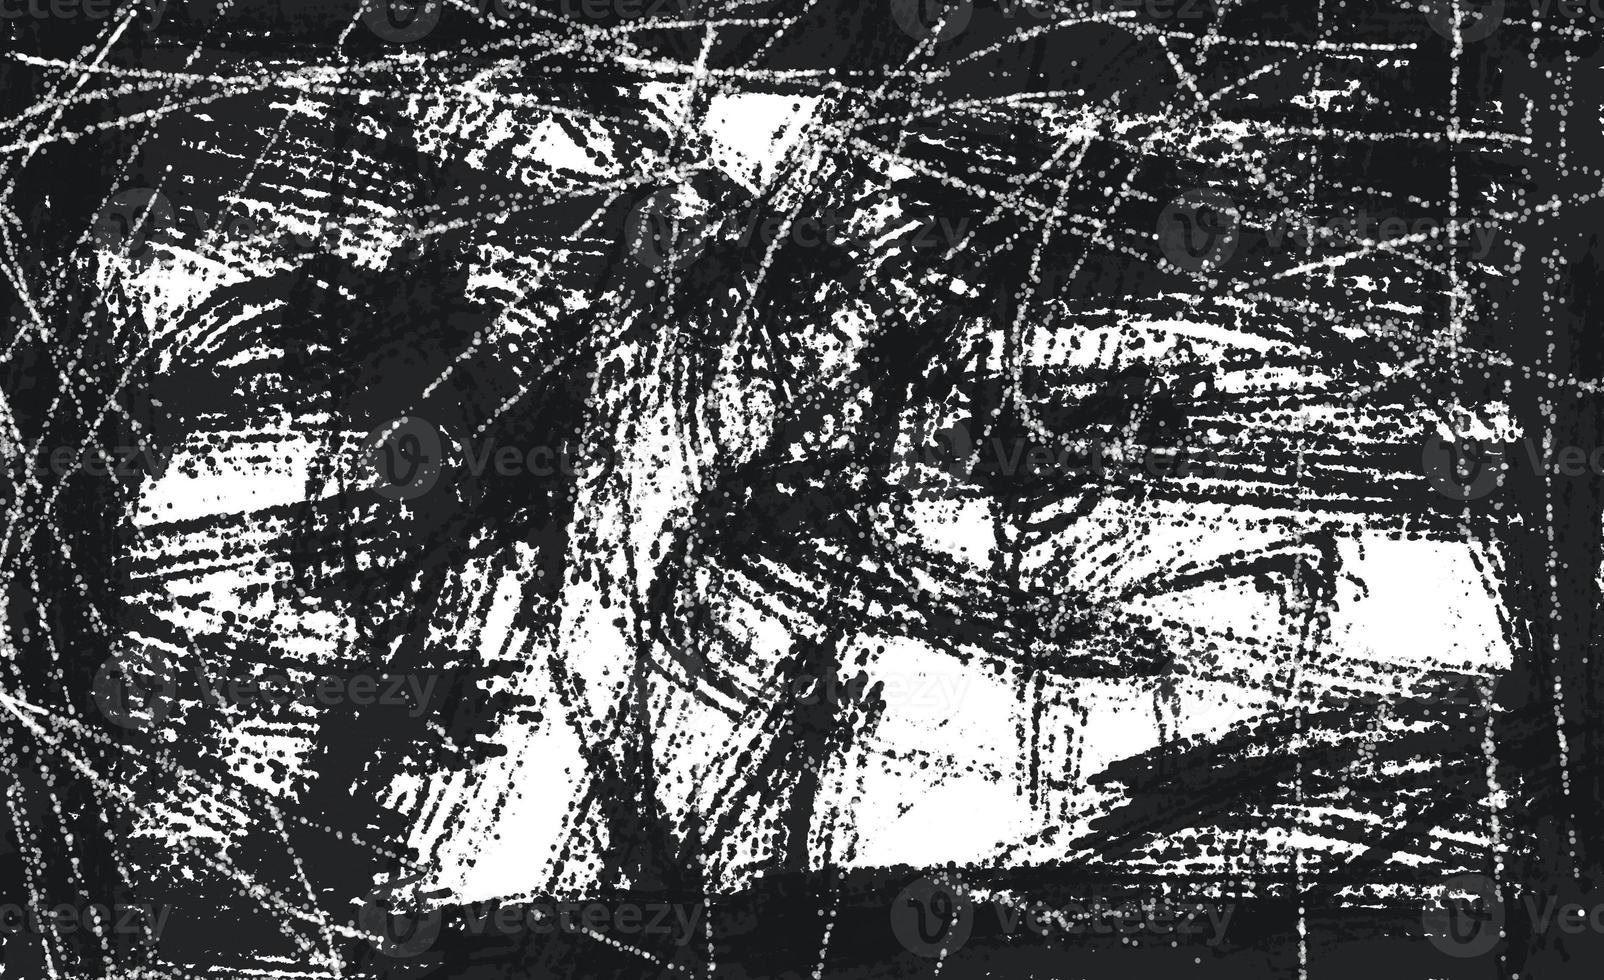 grunge preto e branco urbano. fundo de aflição de sobreposição de poeira bagunçada escura. fácil de criar abstrato pontilhado, riscado, efeito vintage com ruído e grão foto